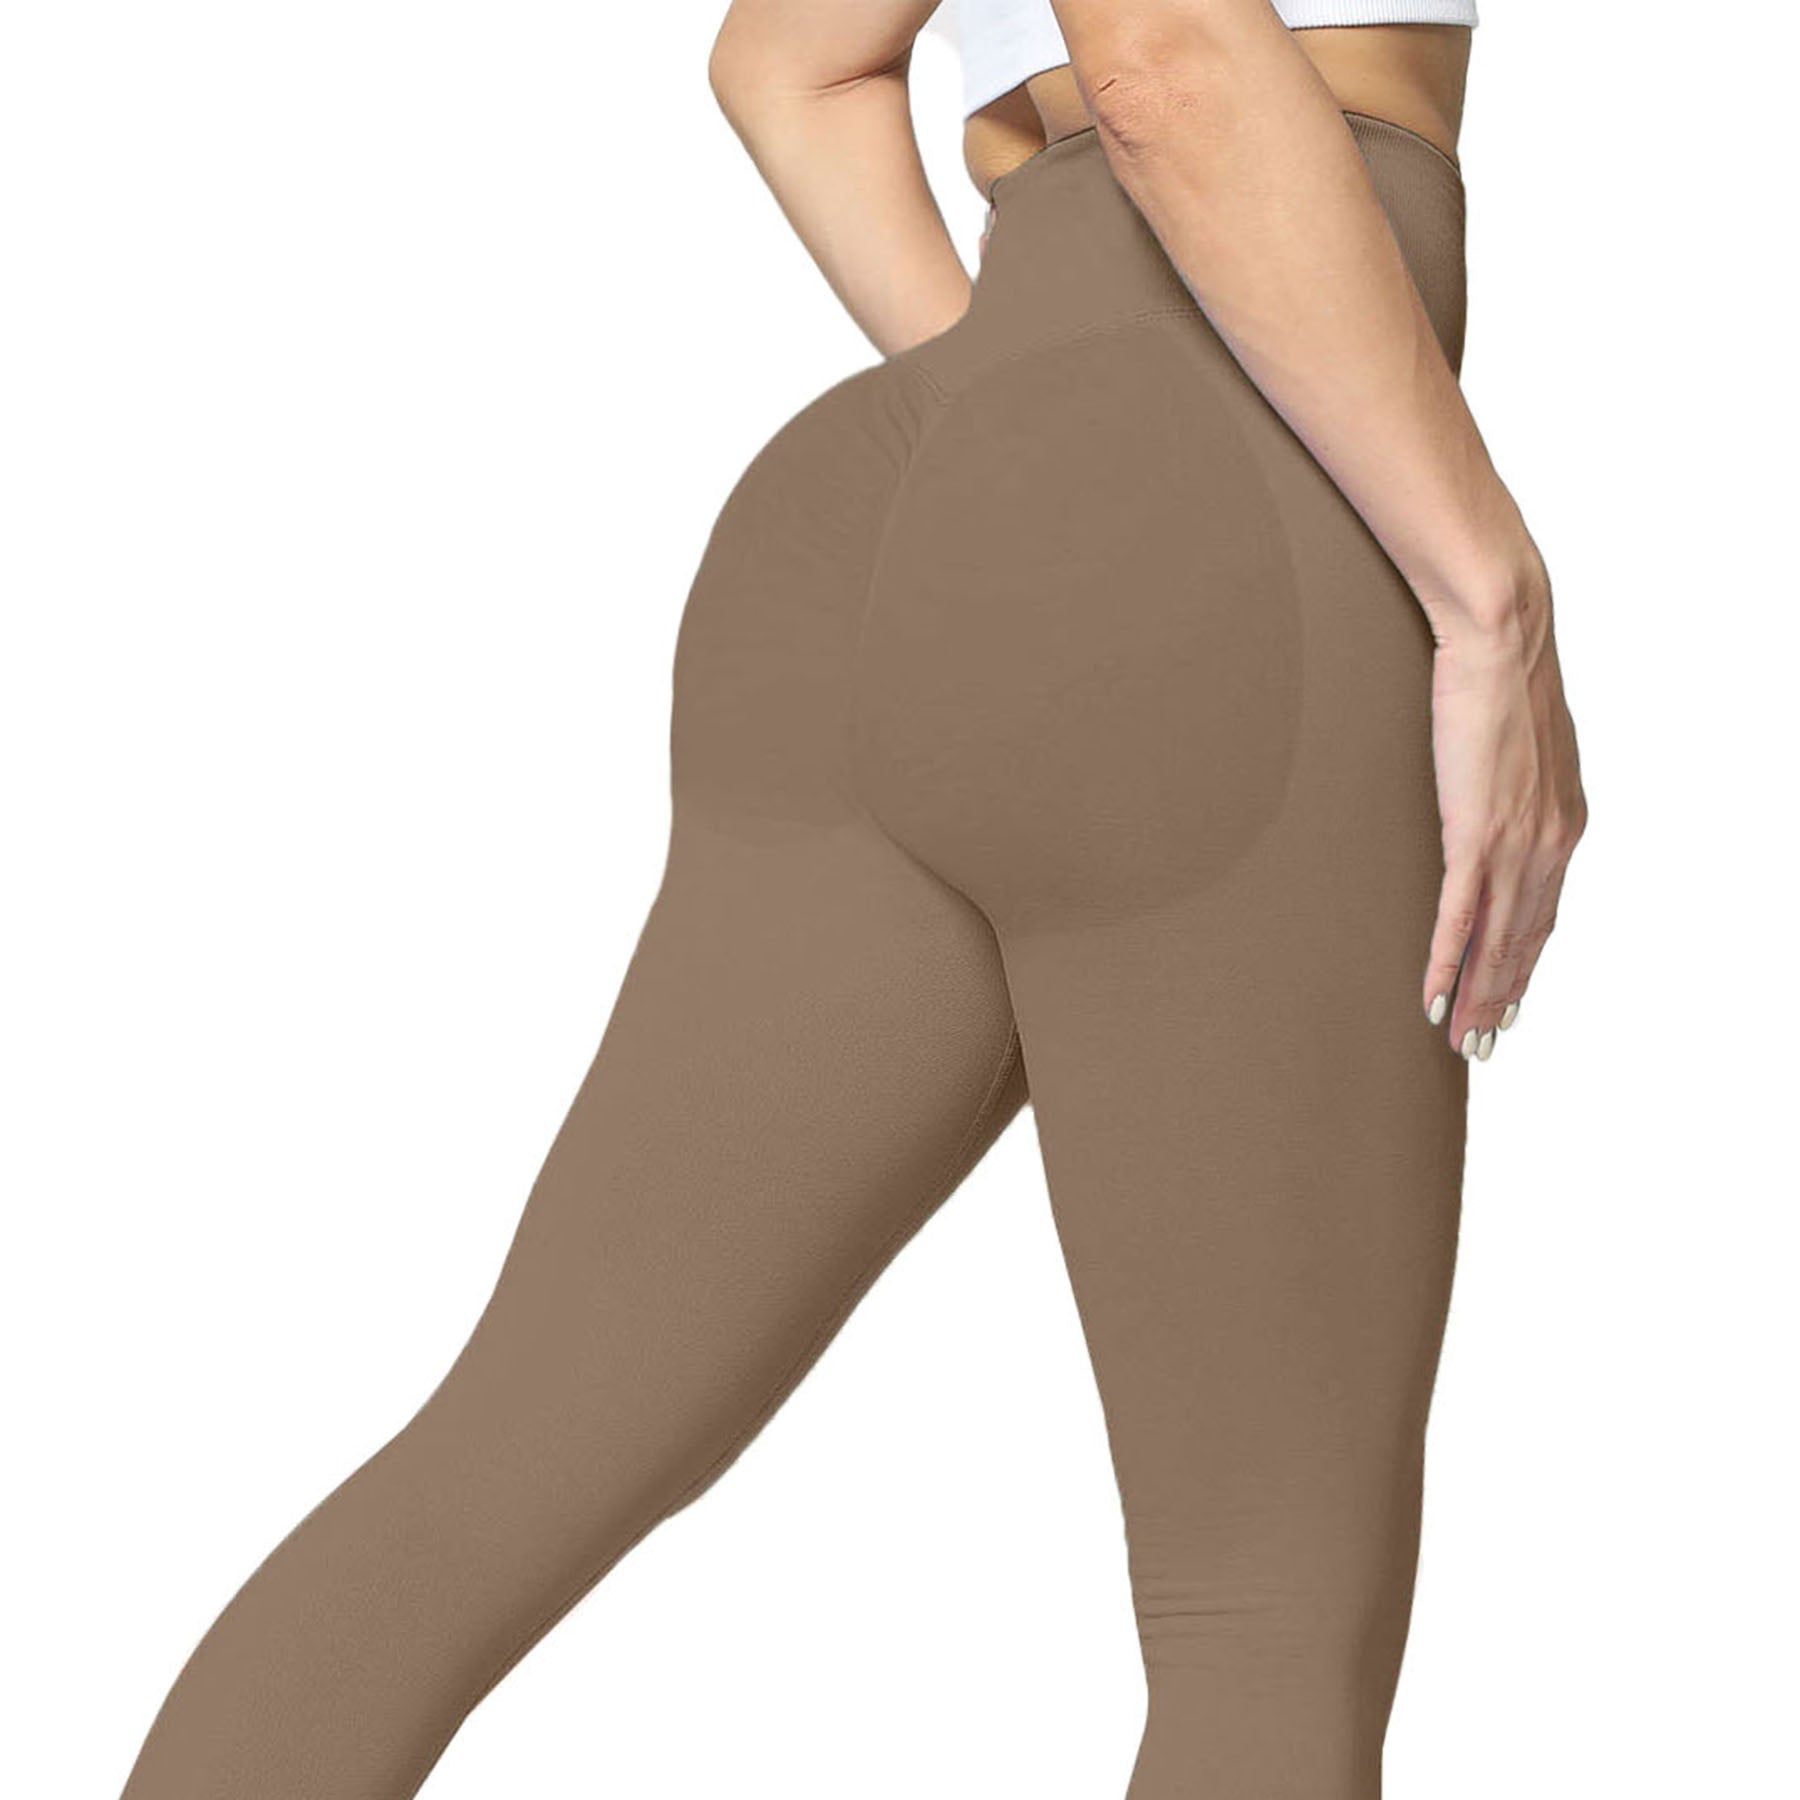 RQYYD Clearance Women Scrunch Butt Lifting Leggings Seamless High